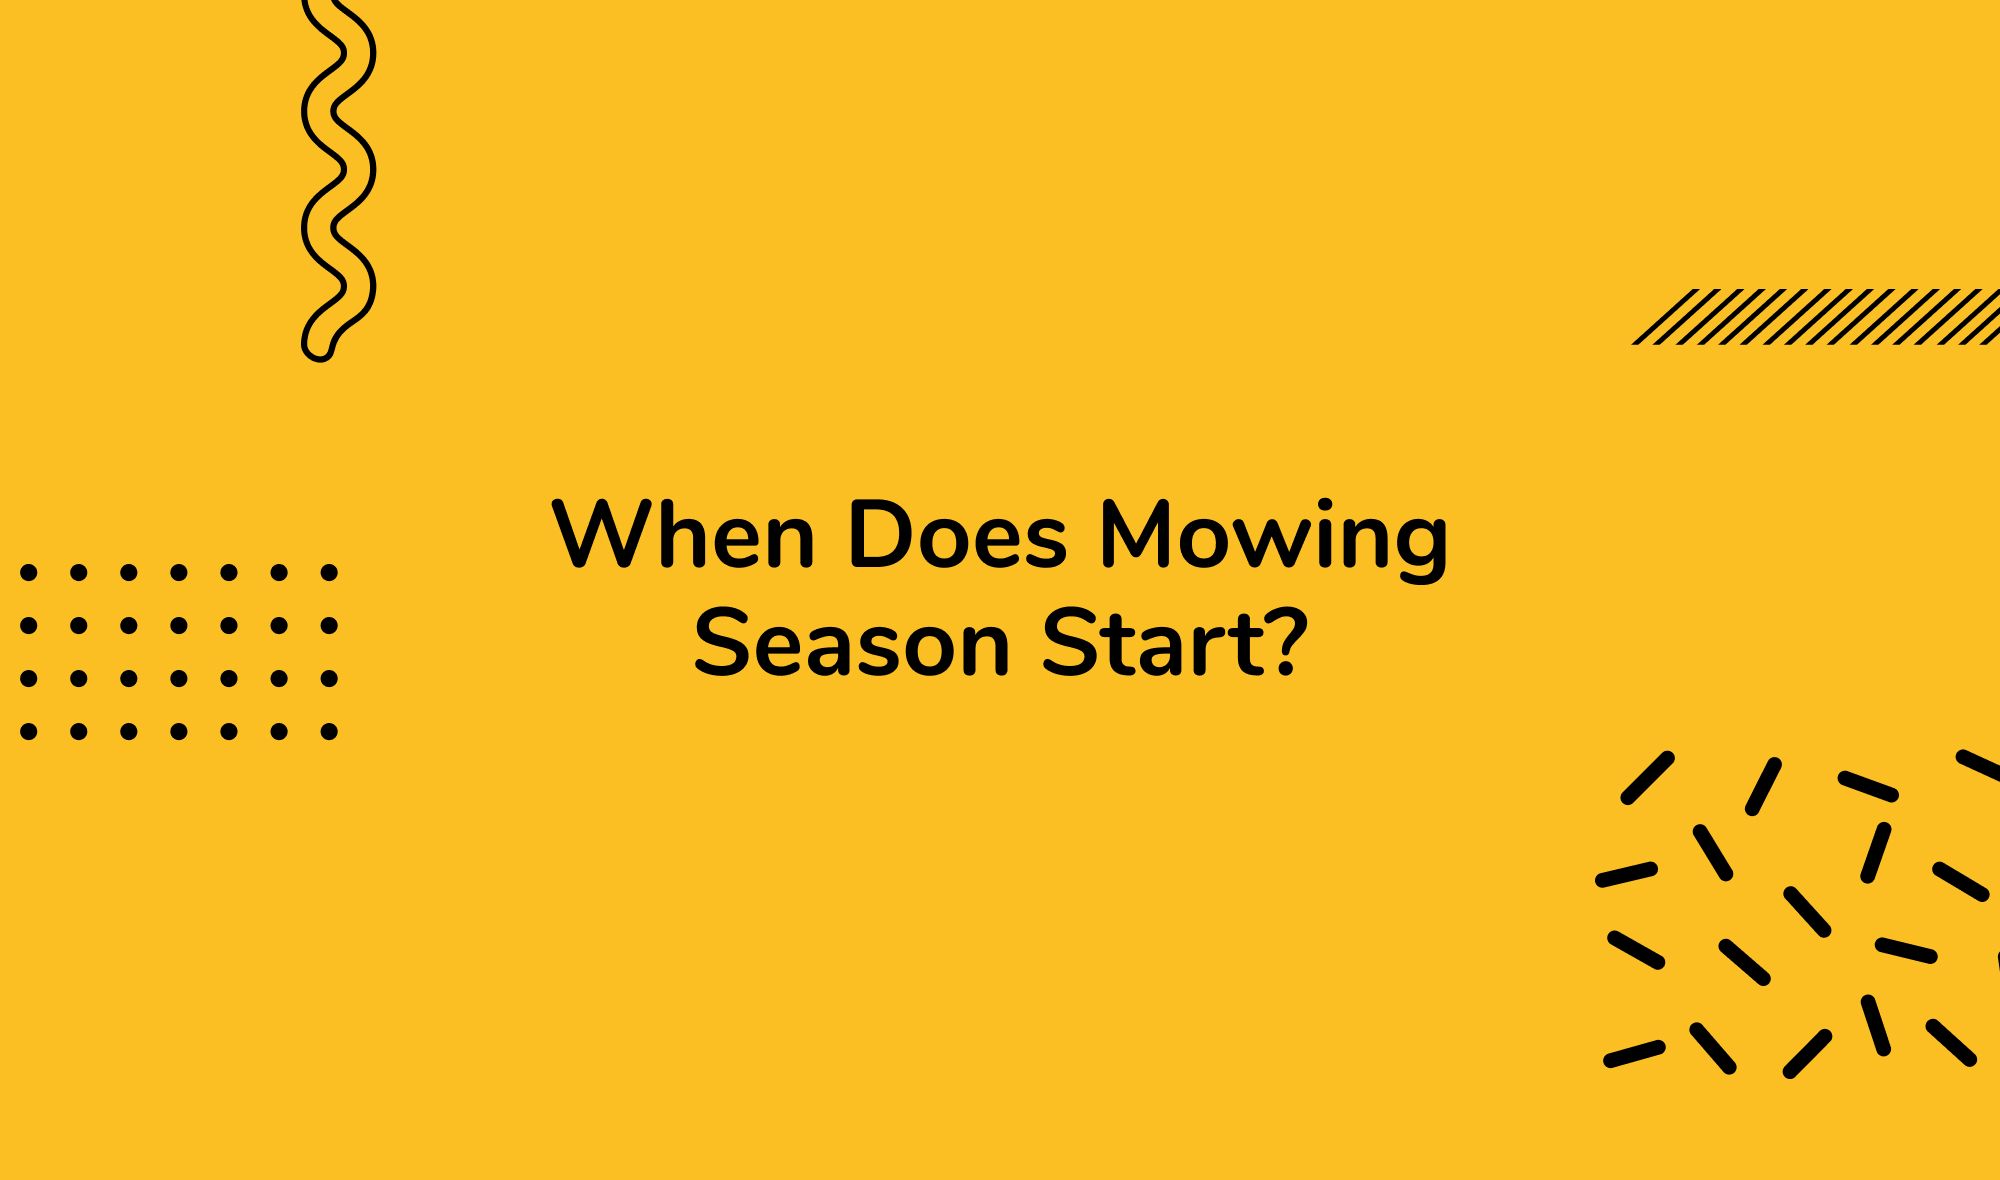 When Does Mowing Season Start?